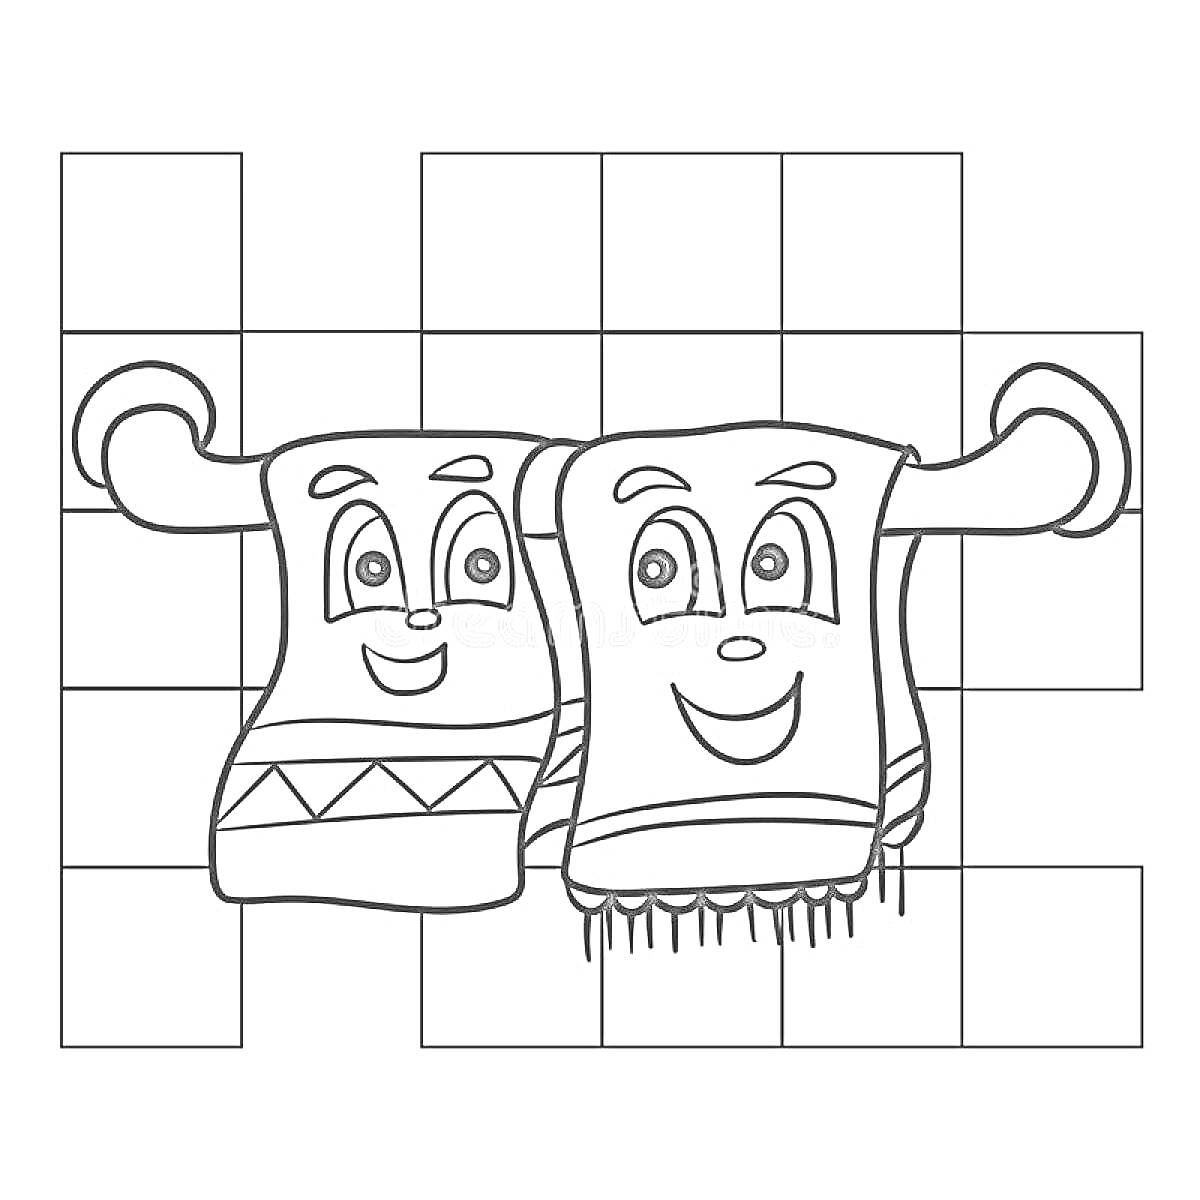 Раскраска Два полотенца с лицами на вешалке, плиточный фон